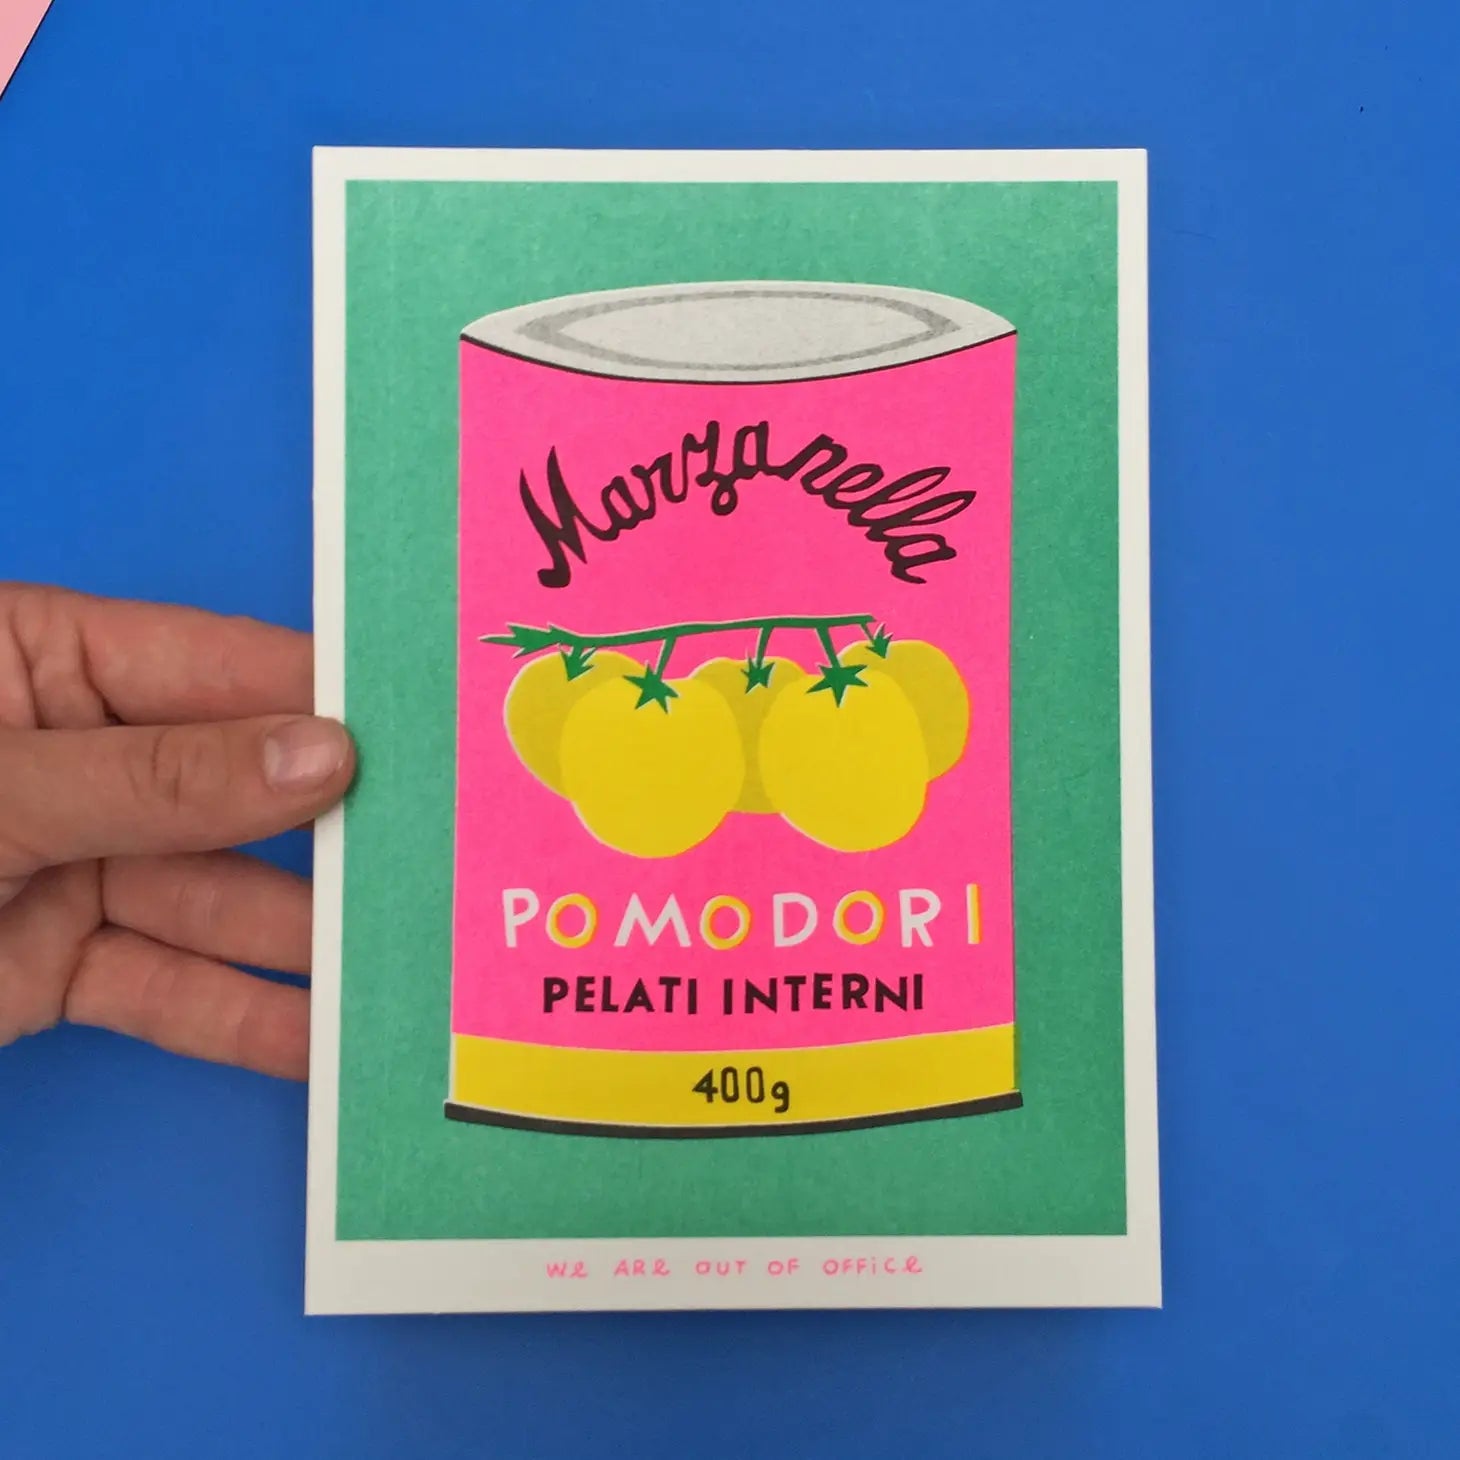 Risograph Print: Can of Pomodori